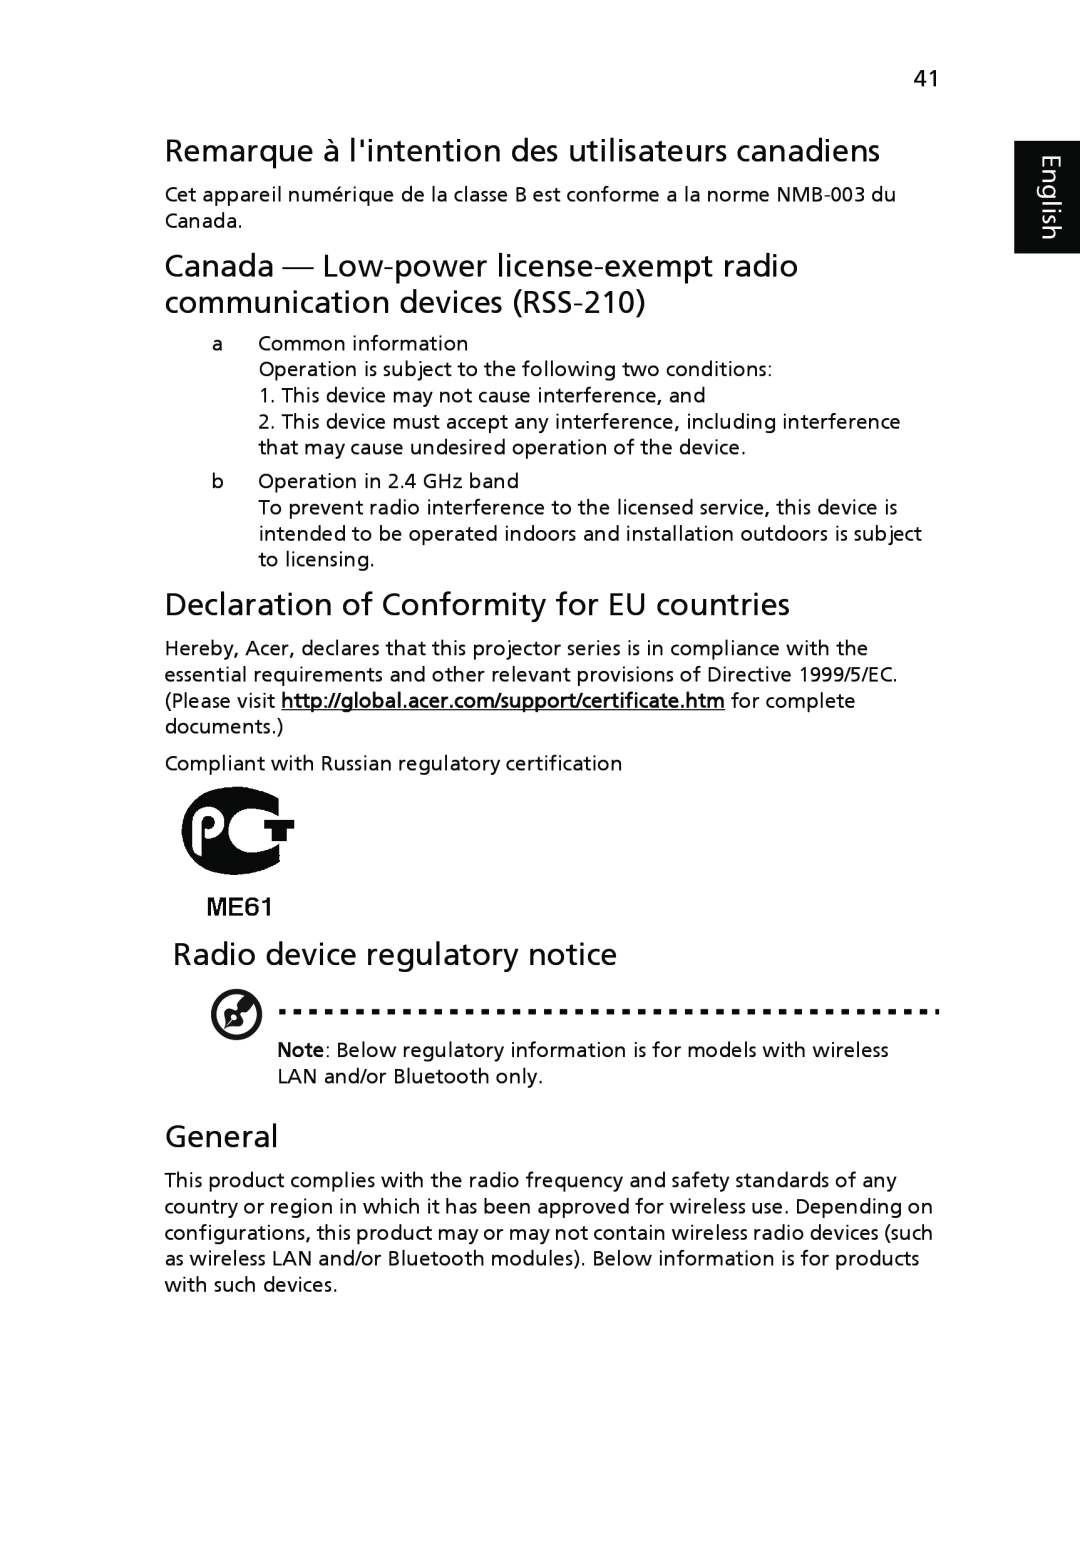 Acer P5270 Remarque à lintention des utilisateurs canadiens, Declaration of Conformity for EU countries, General, English 